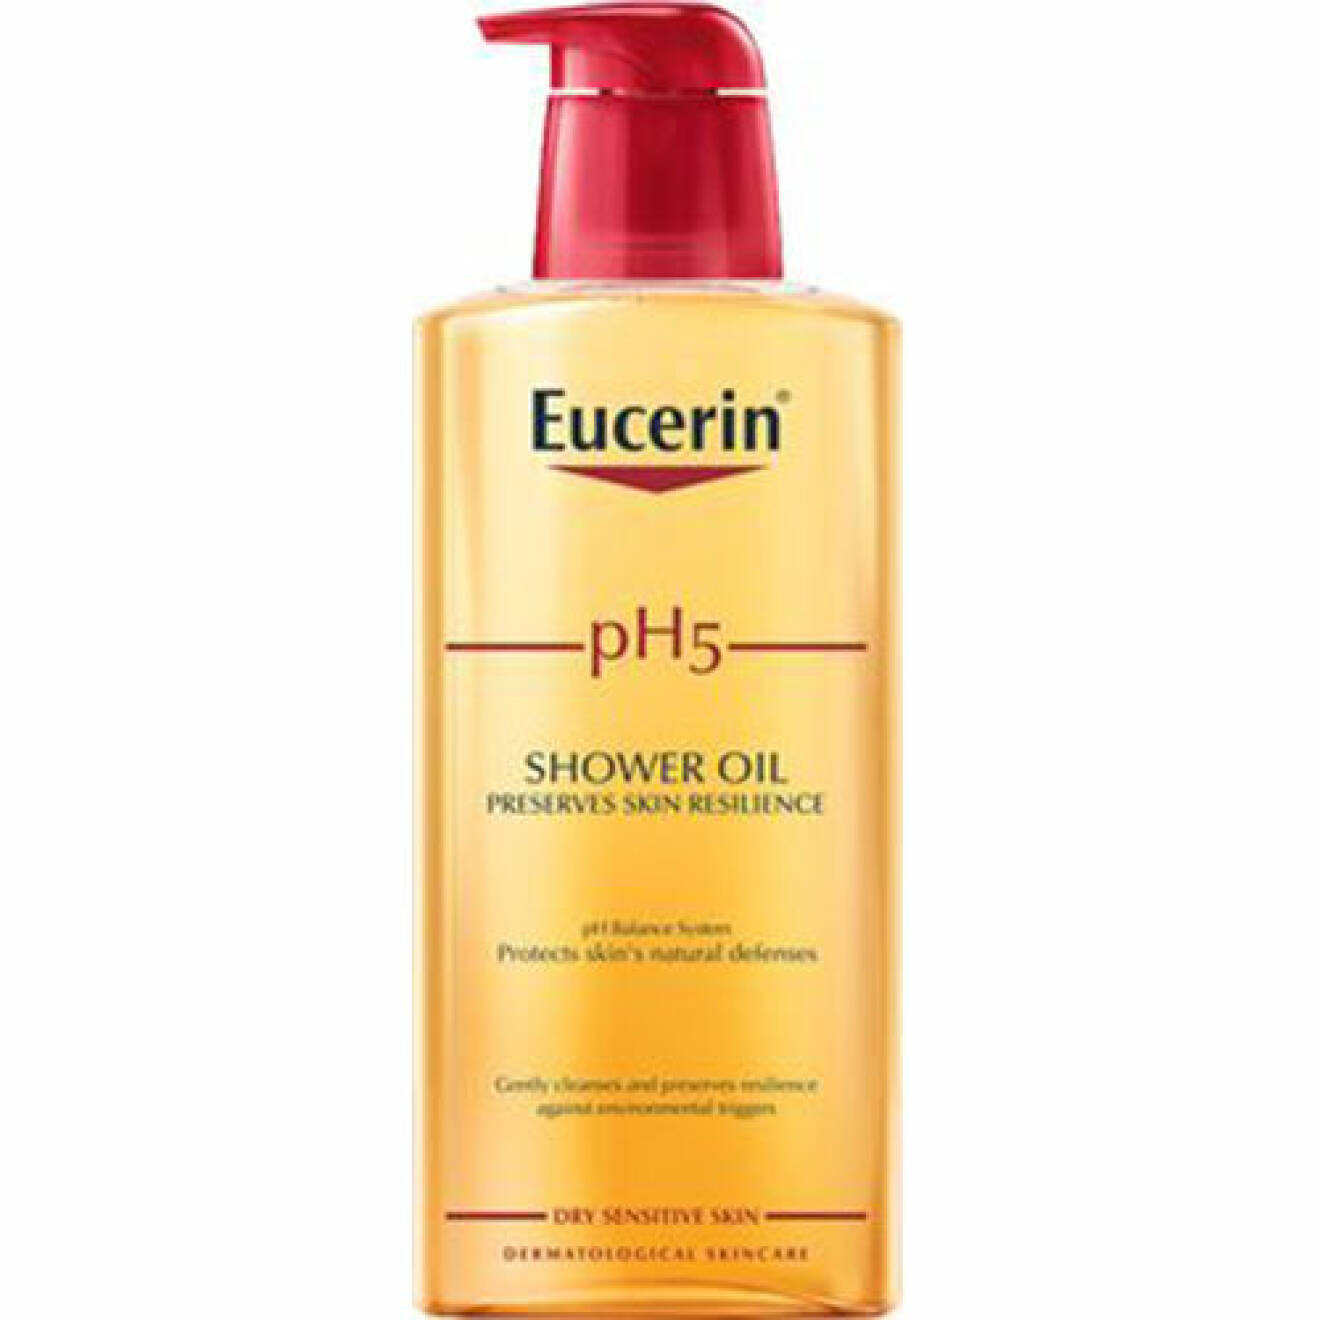 Duscholja för torr hud från eucrin